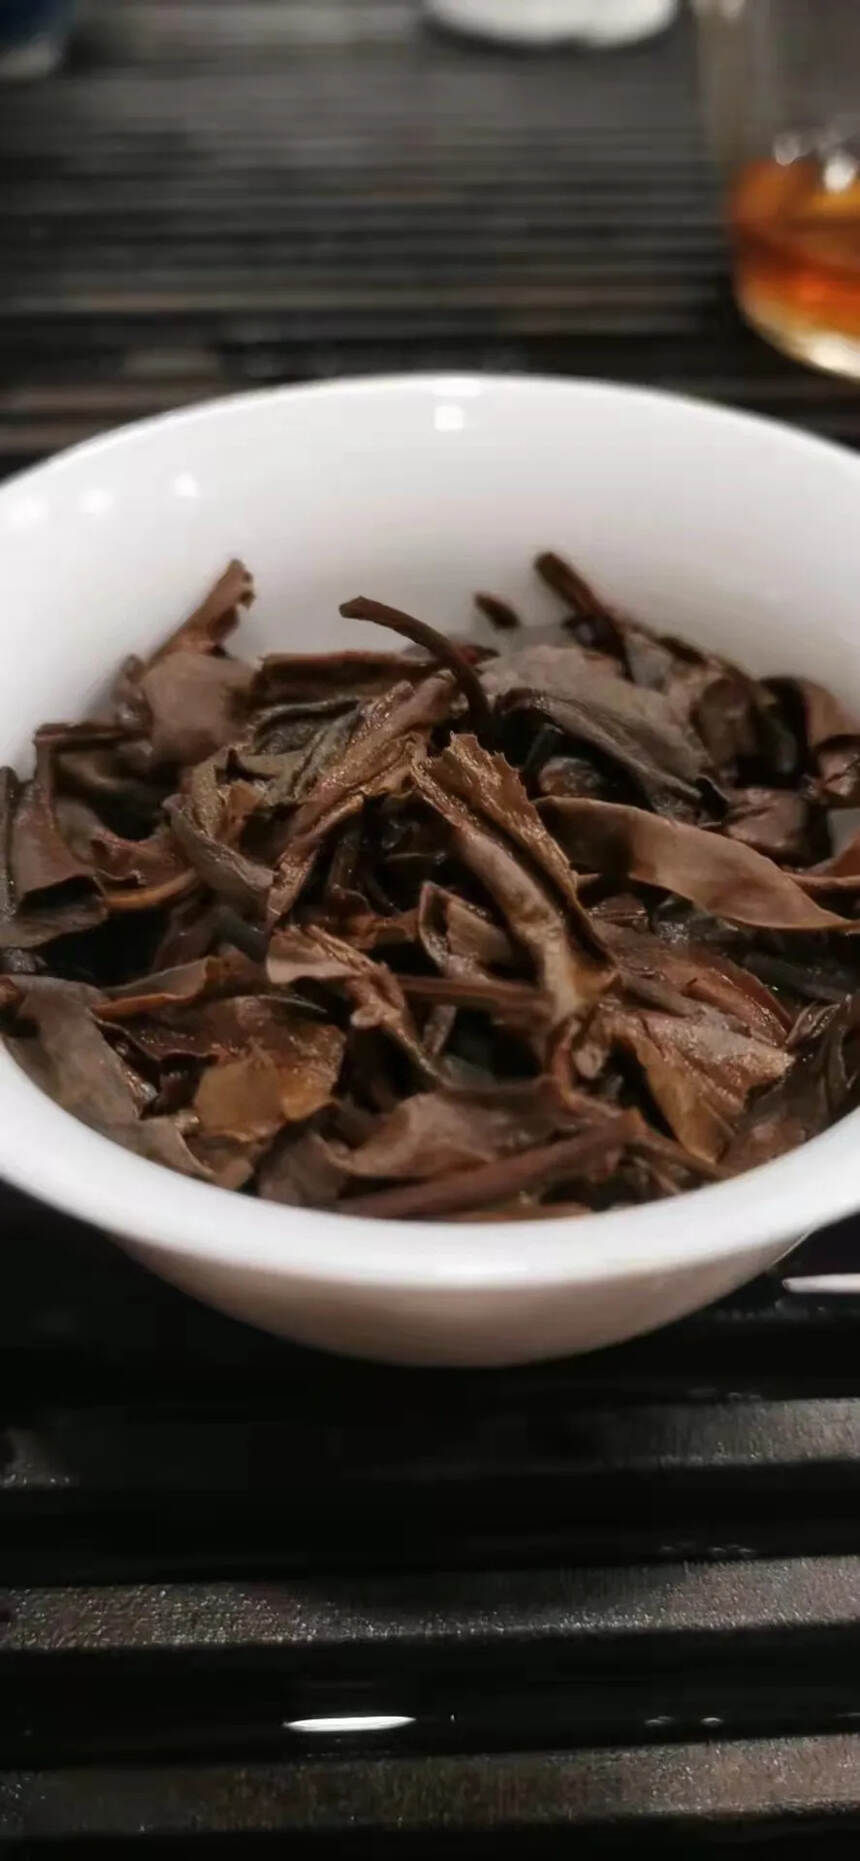 茶，还是传统工艺制作的好！
2000年中茶牌大黄印青